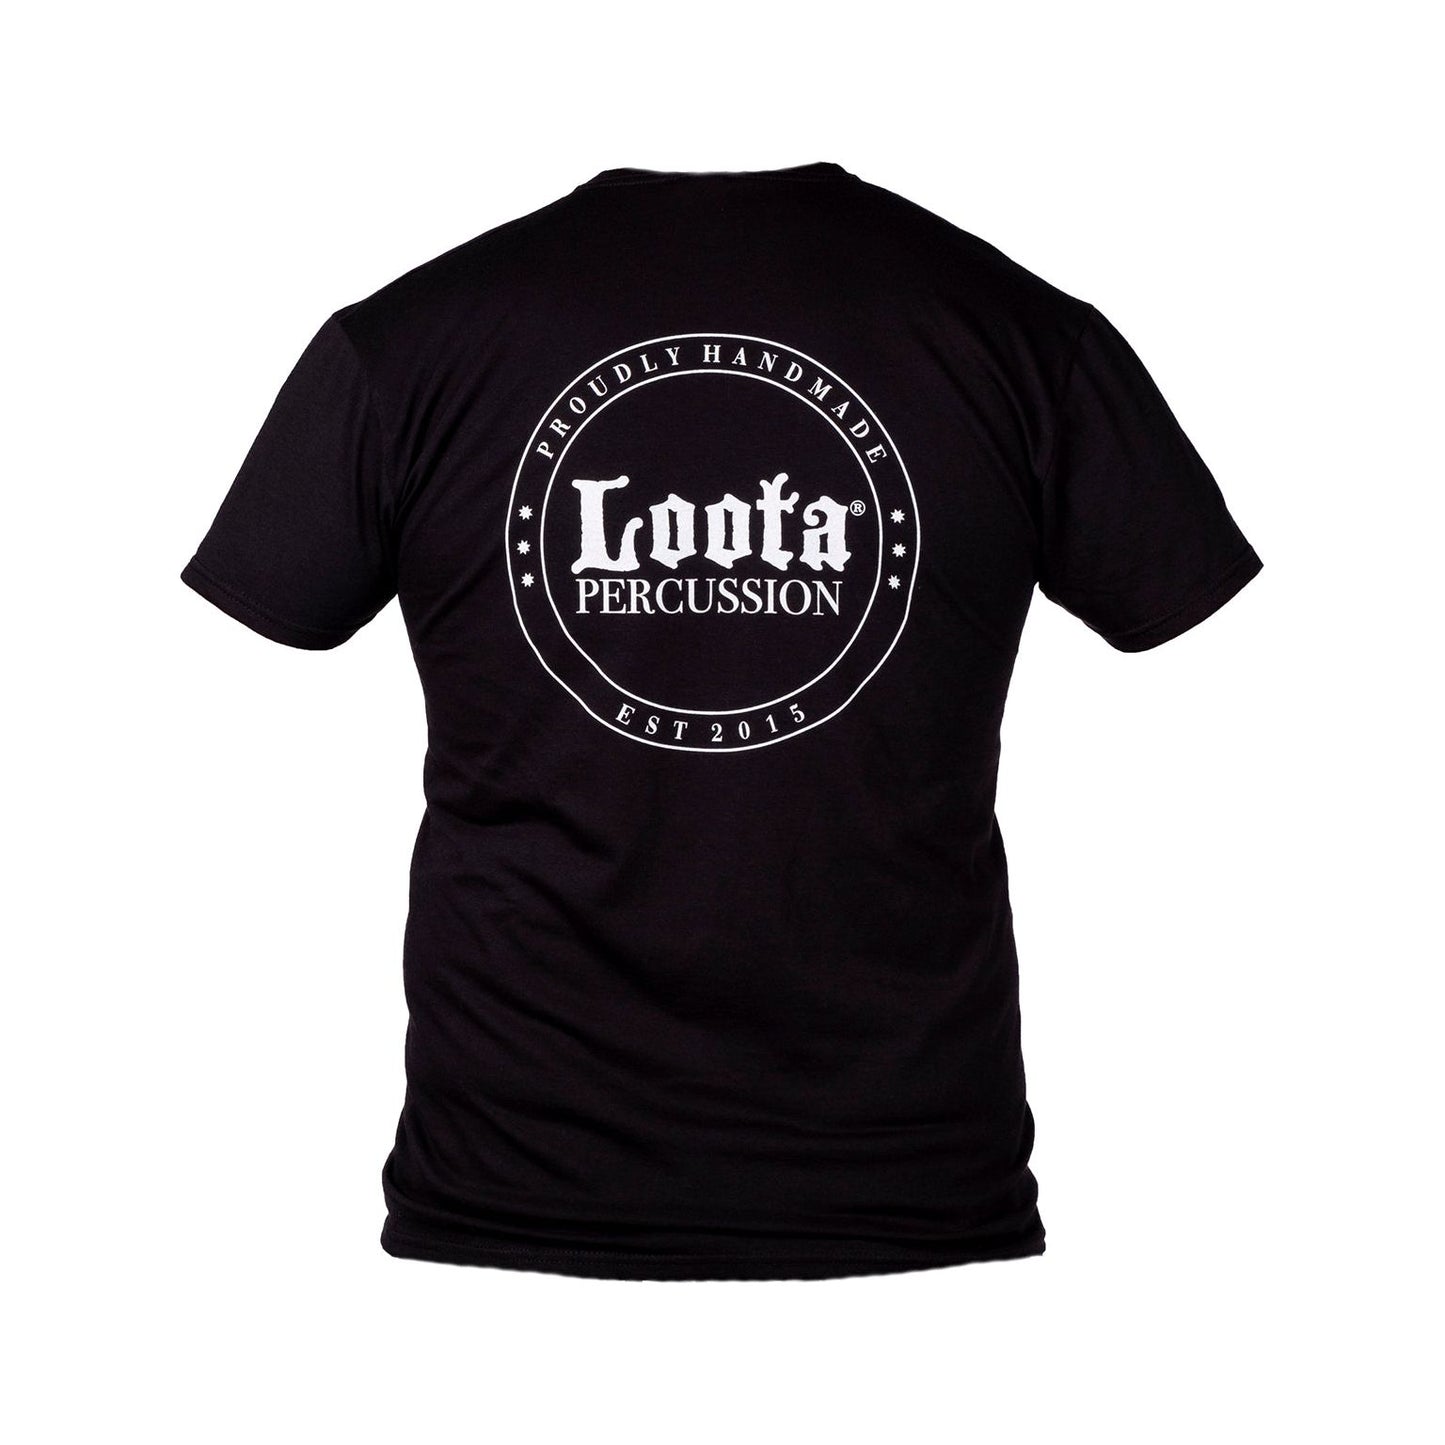 Loota Percussion T-shirt